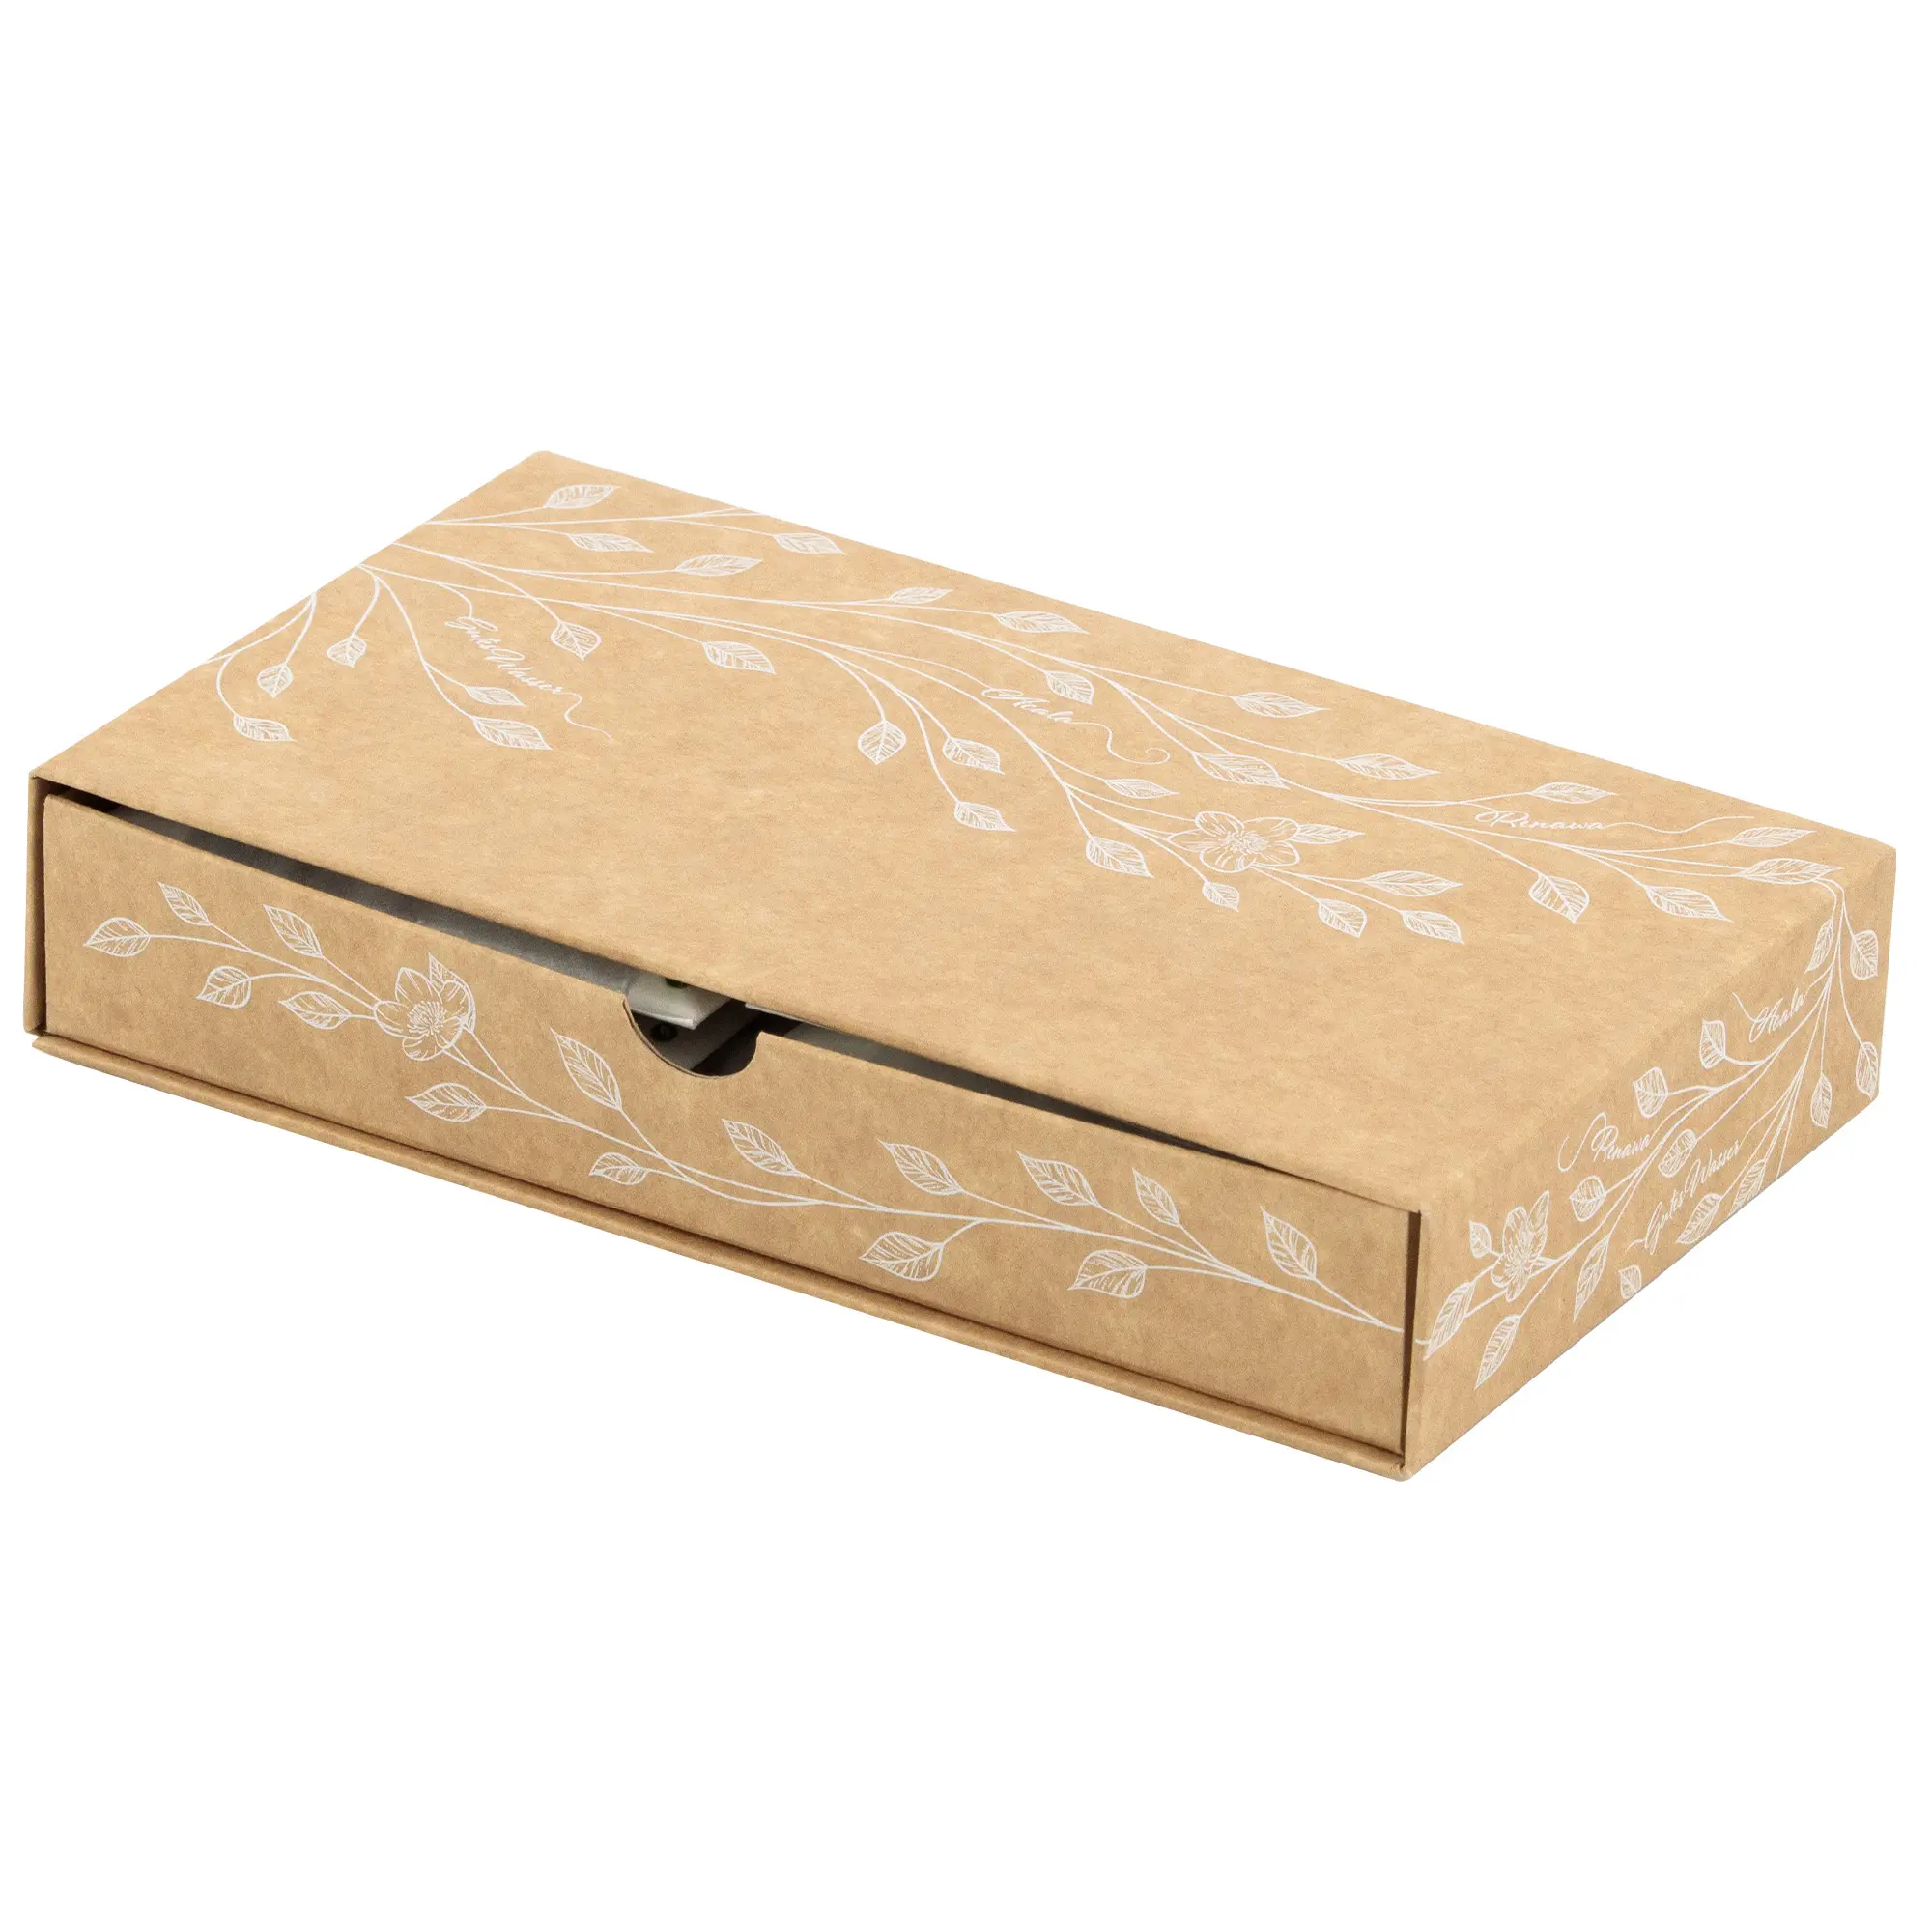 Man sieht die Verpackung für die ReNaWa Nachfüll-Komponenten für 4 Monate. Der Karton ist Naturbraun, bedruckt mit weißen Blätterranken und Infos zum Inhalt der Schubladenbox.